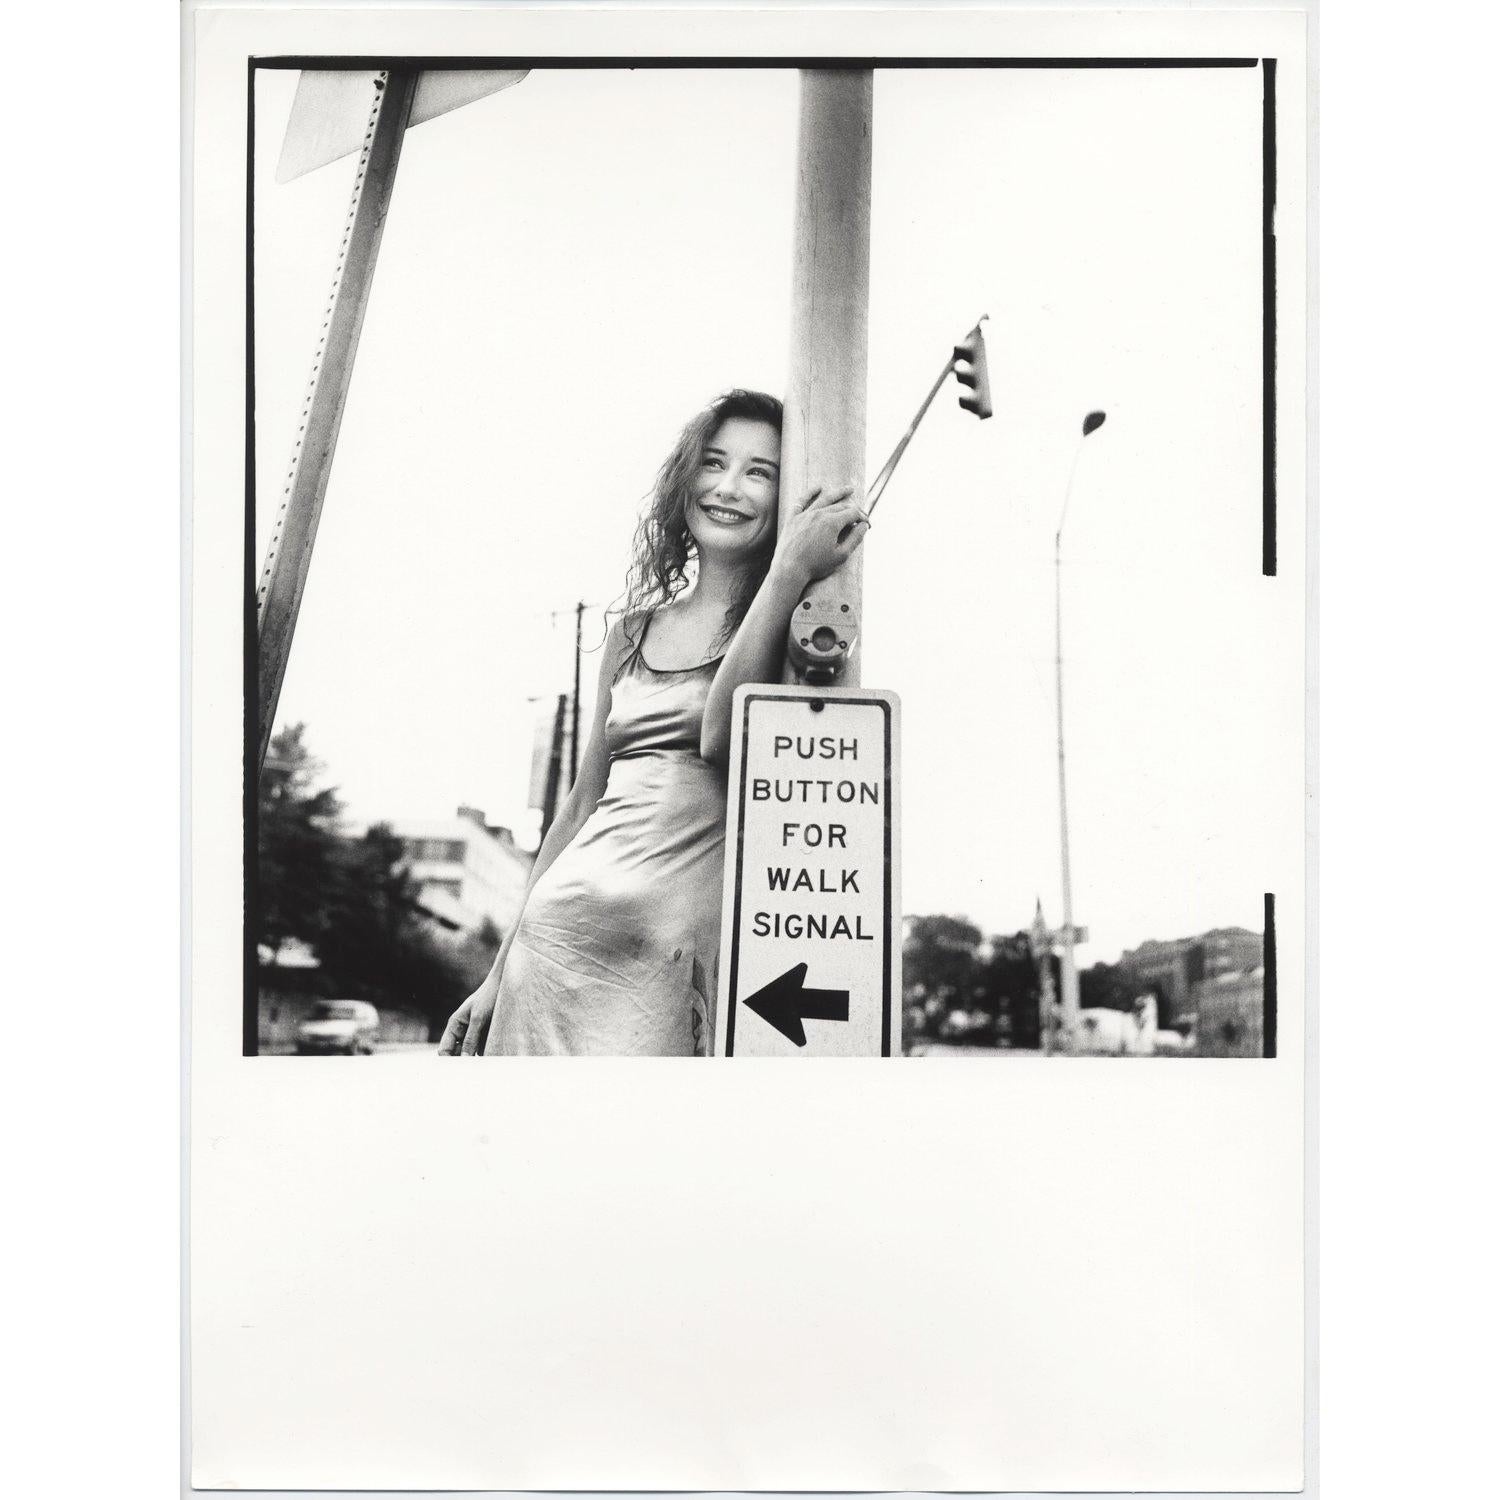 Tirage original à la chambre noire 12x16" du photographe Jake Chessum de Tori Amos, imprimé à la main. Imprimé par Jake dans les années 90, à l'époque de la prise de vue.

Jake se souvient de la session : "Tori Amos a joué deux nuits à Atlanta, Ga.